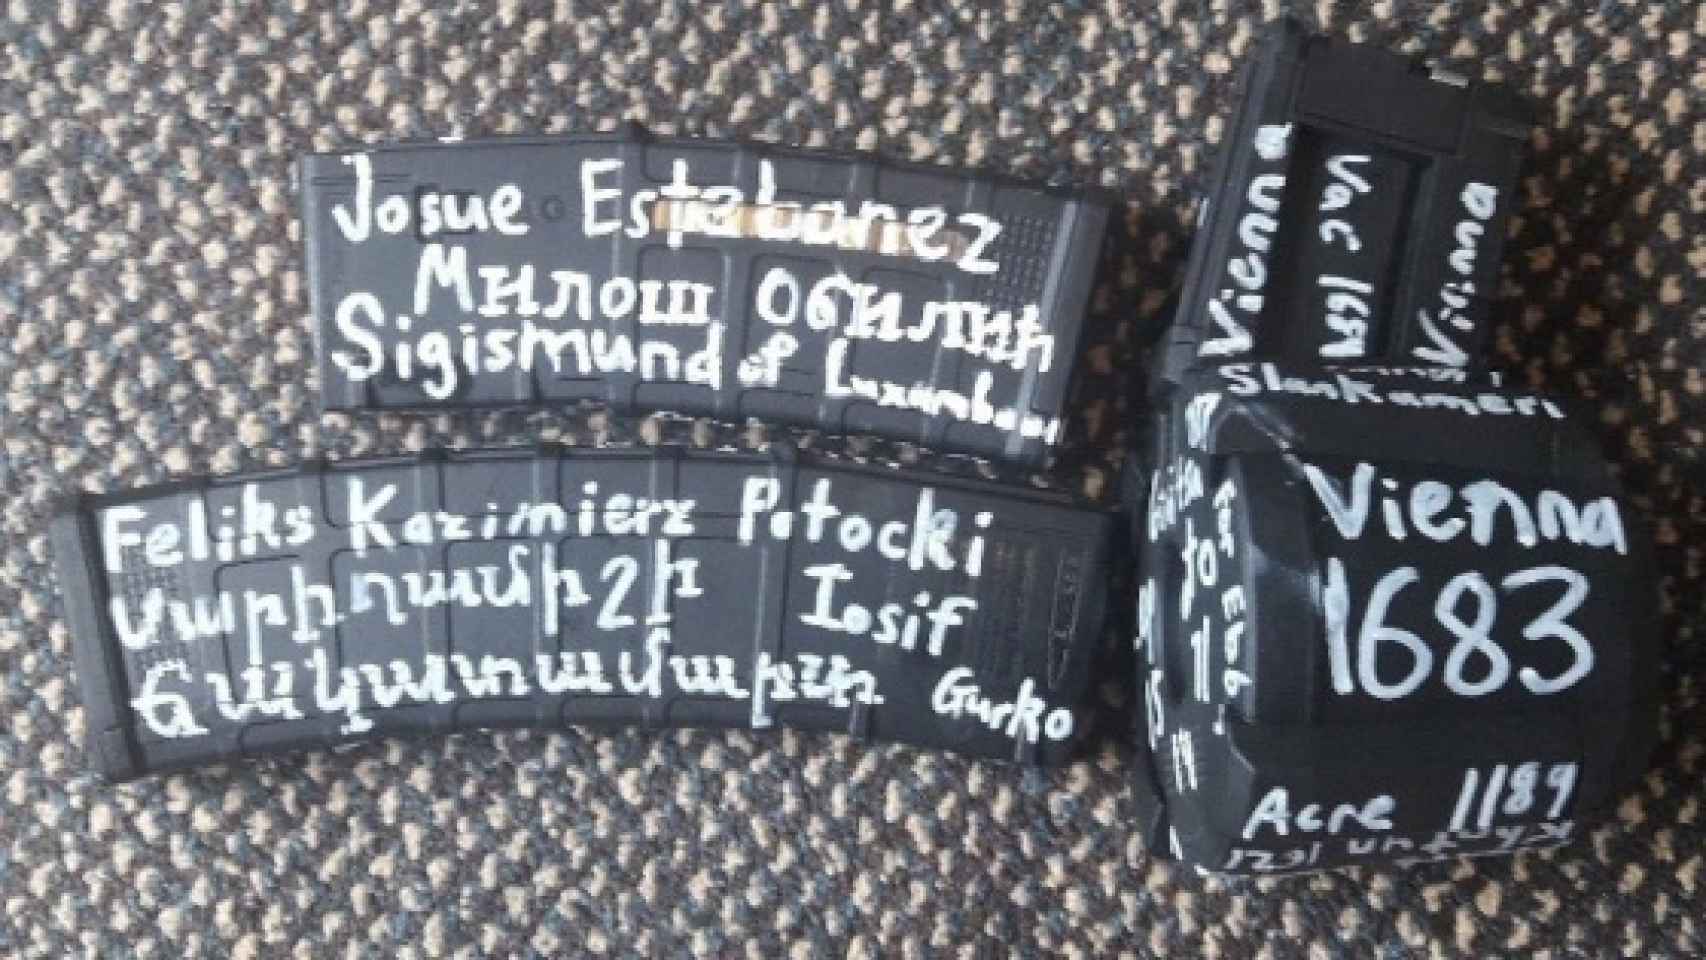 Imagen de los cargadores utilizados en el atentado.